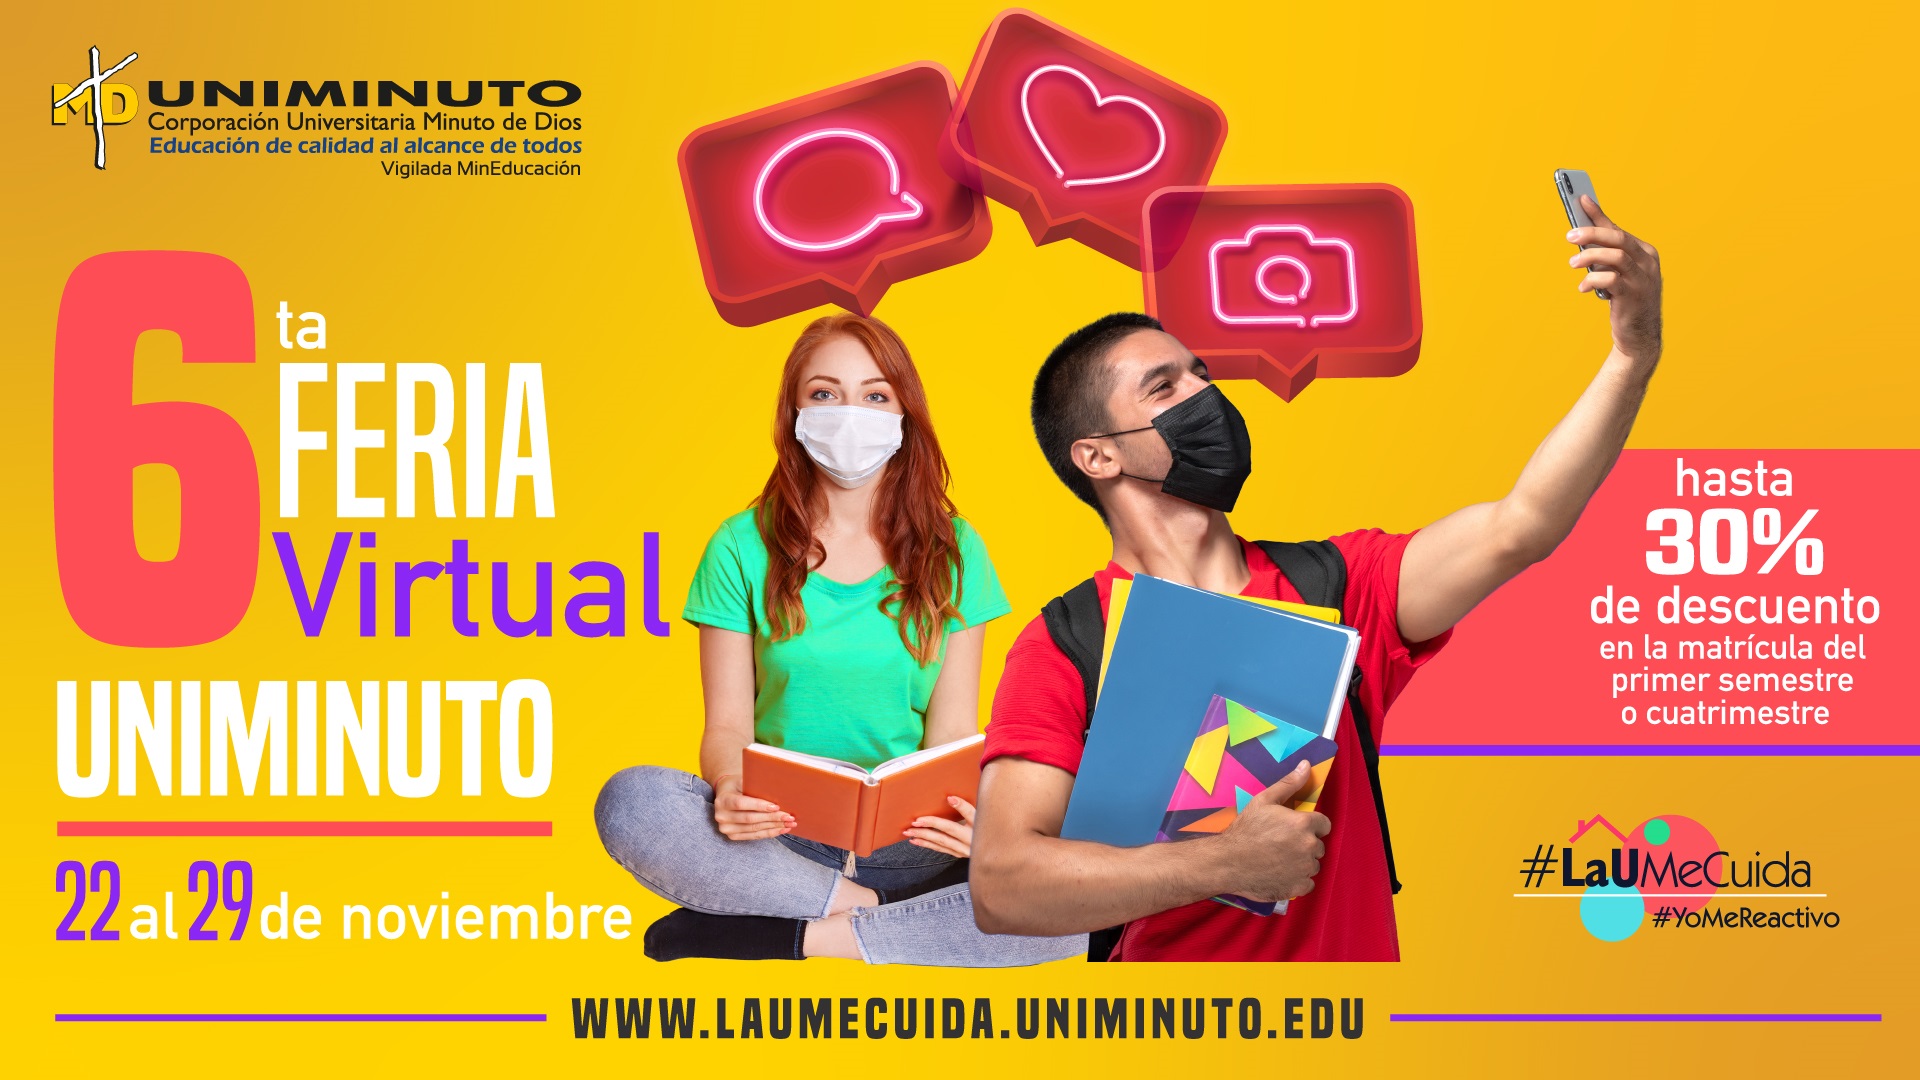 Con xito UNIMINUTO realizar su Sexta Feria Virtual a nivel nacional con una importante ayuda a los colombianos